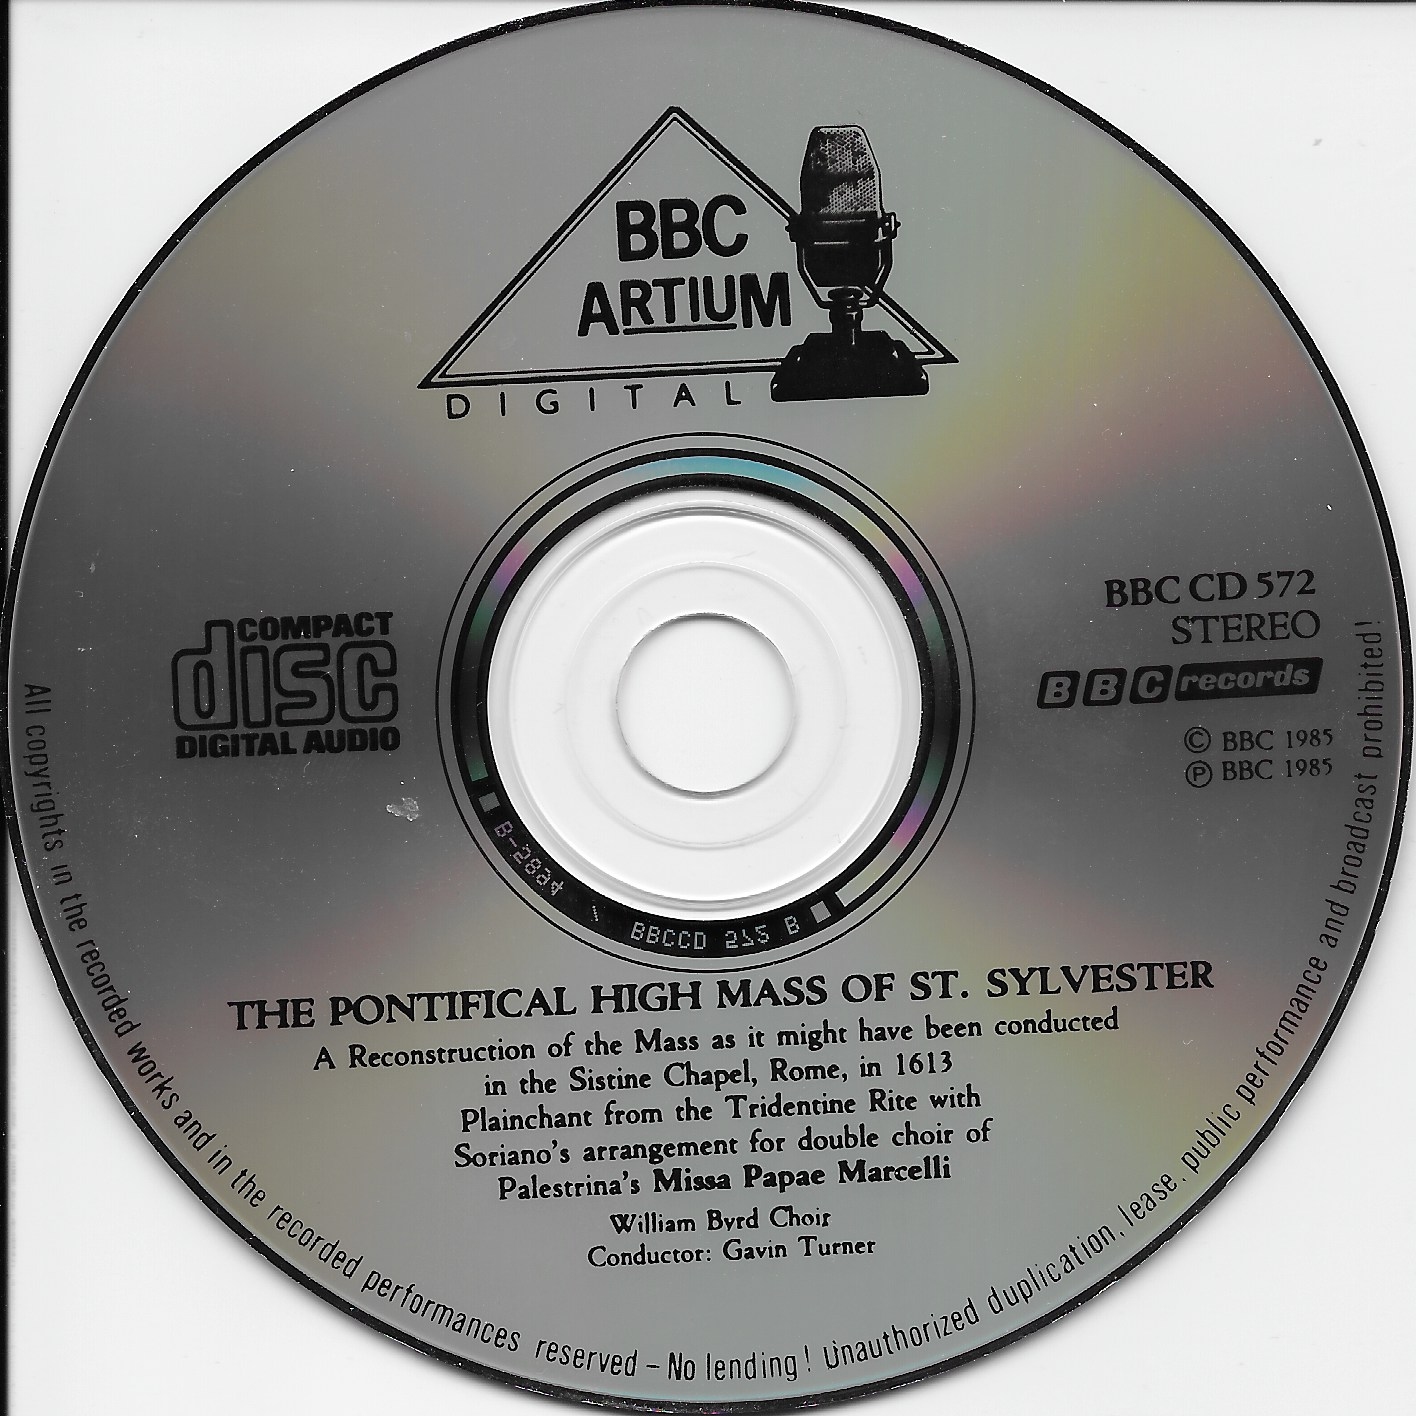 BBC Artium label